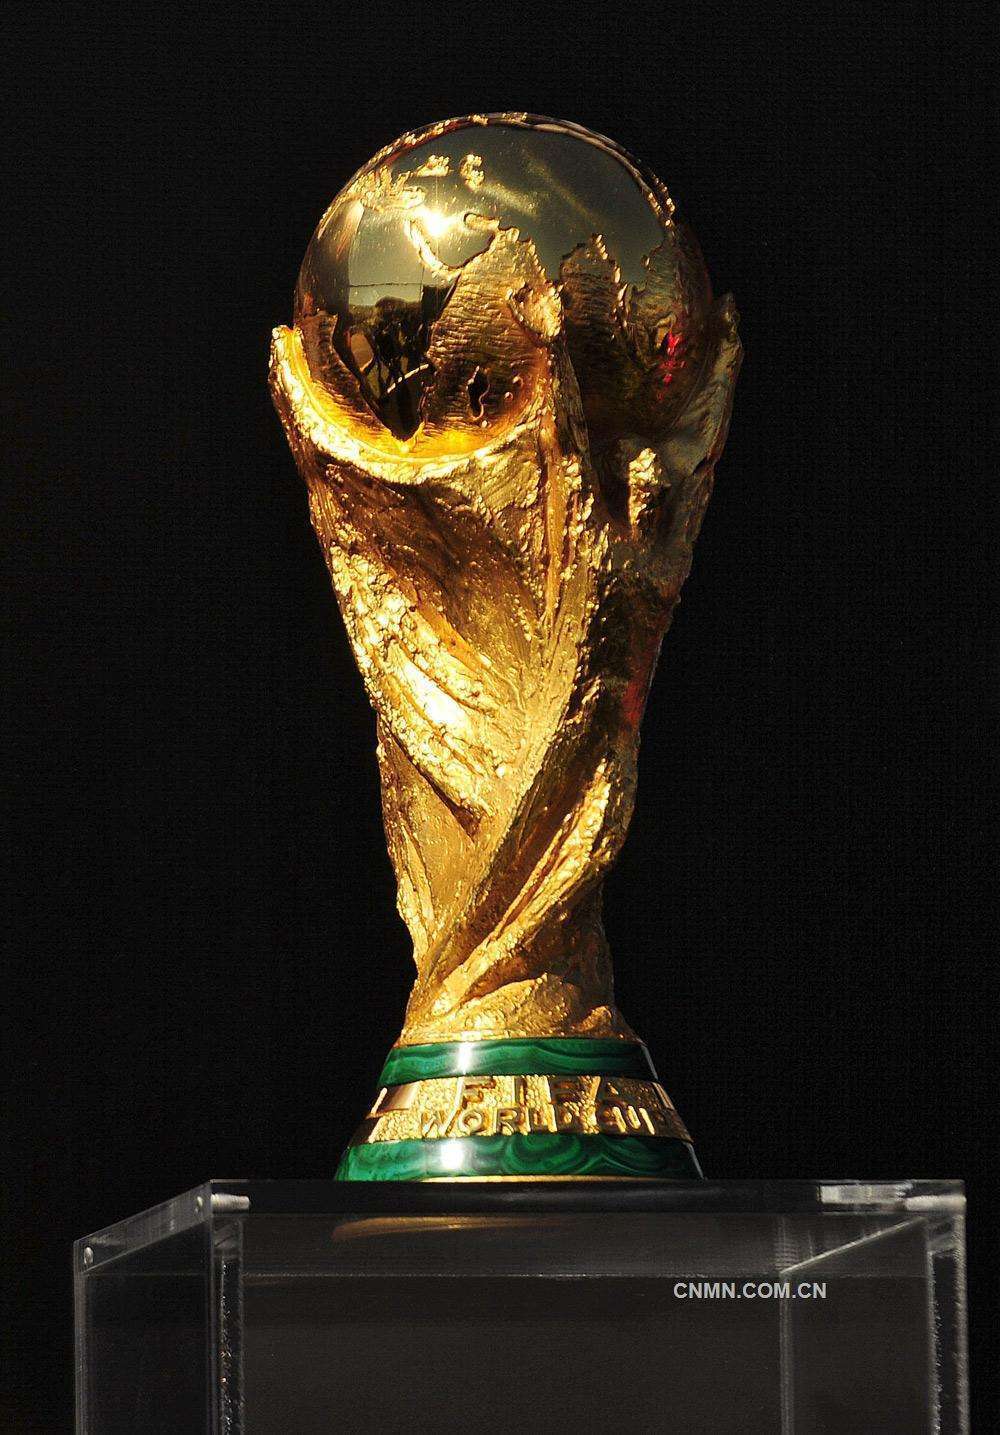 至今只有8个国家夺得过世界杯男子足球锦标赛冠军